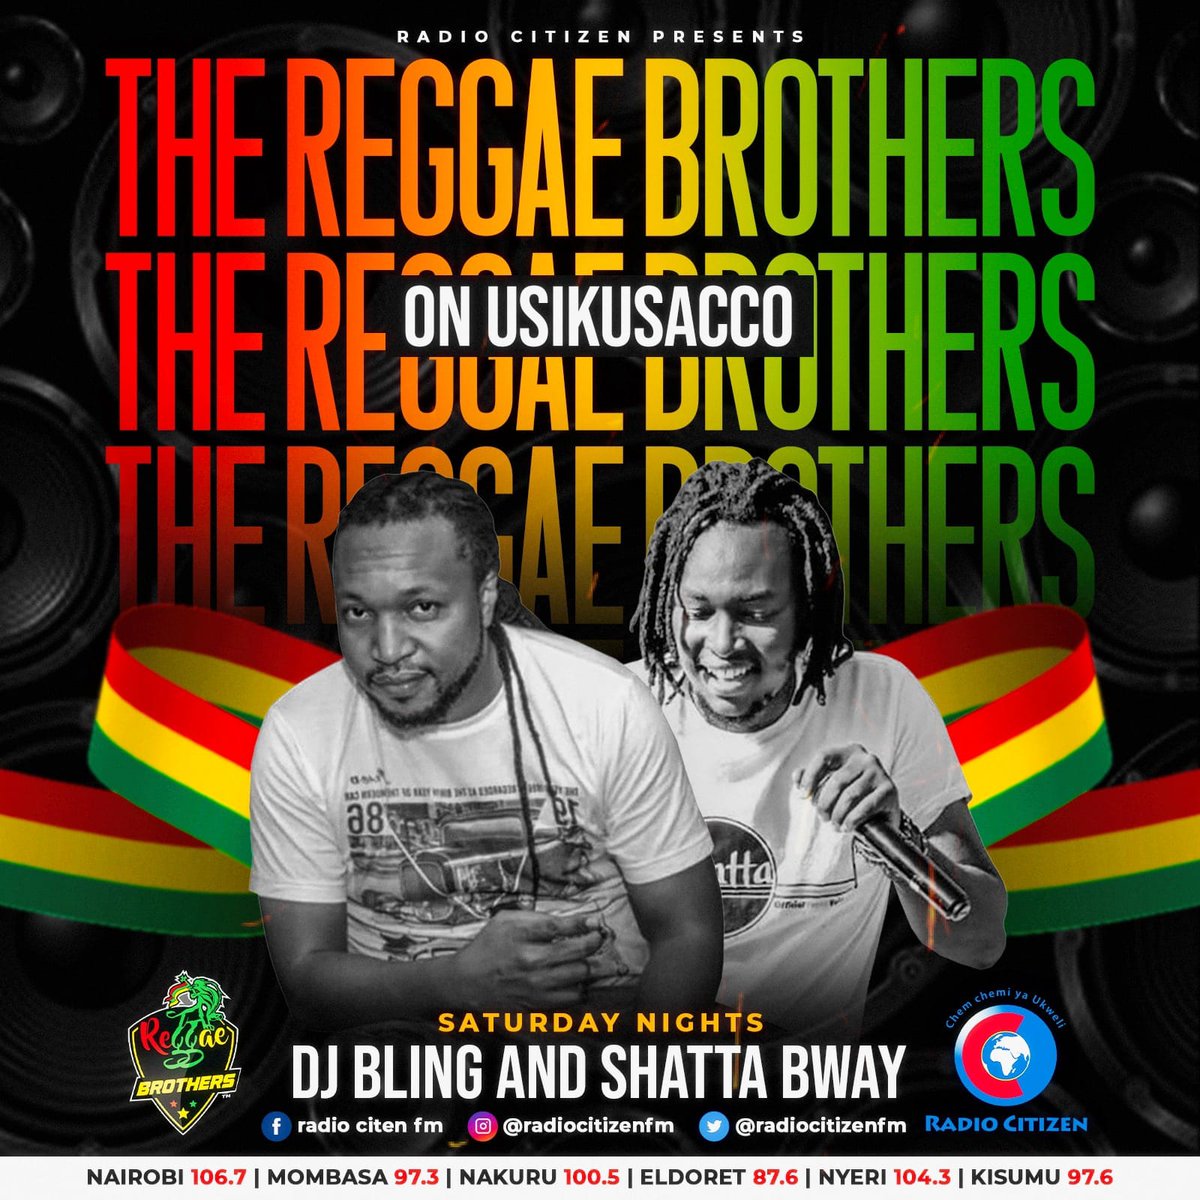 #ReggaeBrothers pon de scene 
Uko locked ukiwa wapi?
@ShattaTikiTaka @DjBlingOfficial 
#usikusacco